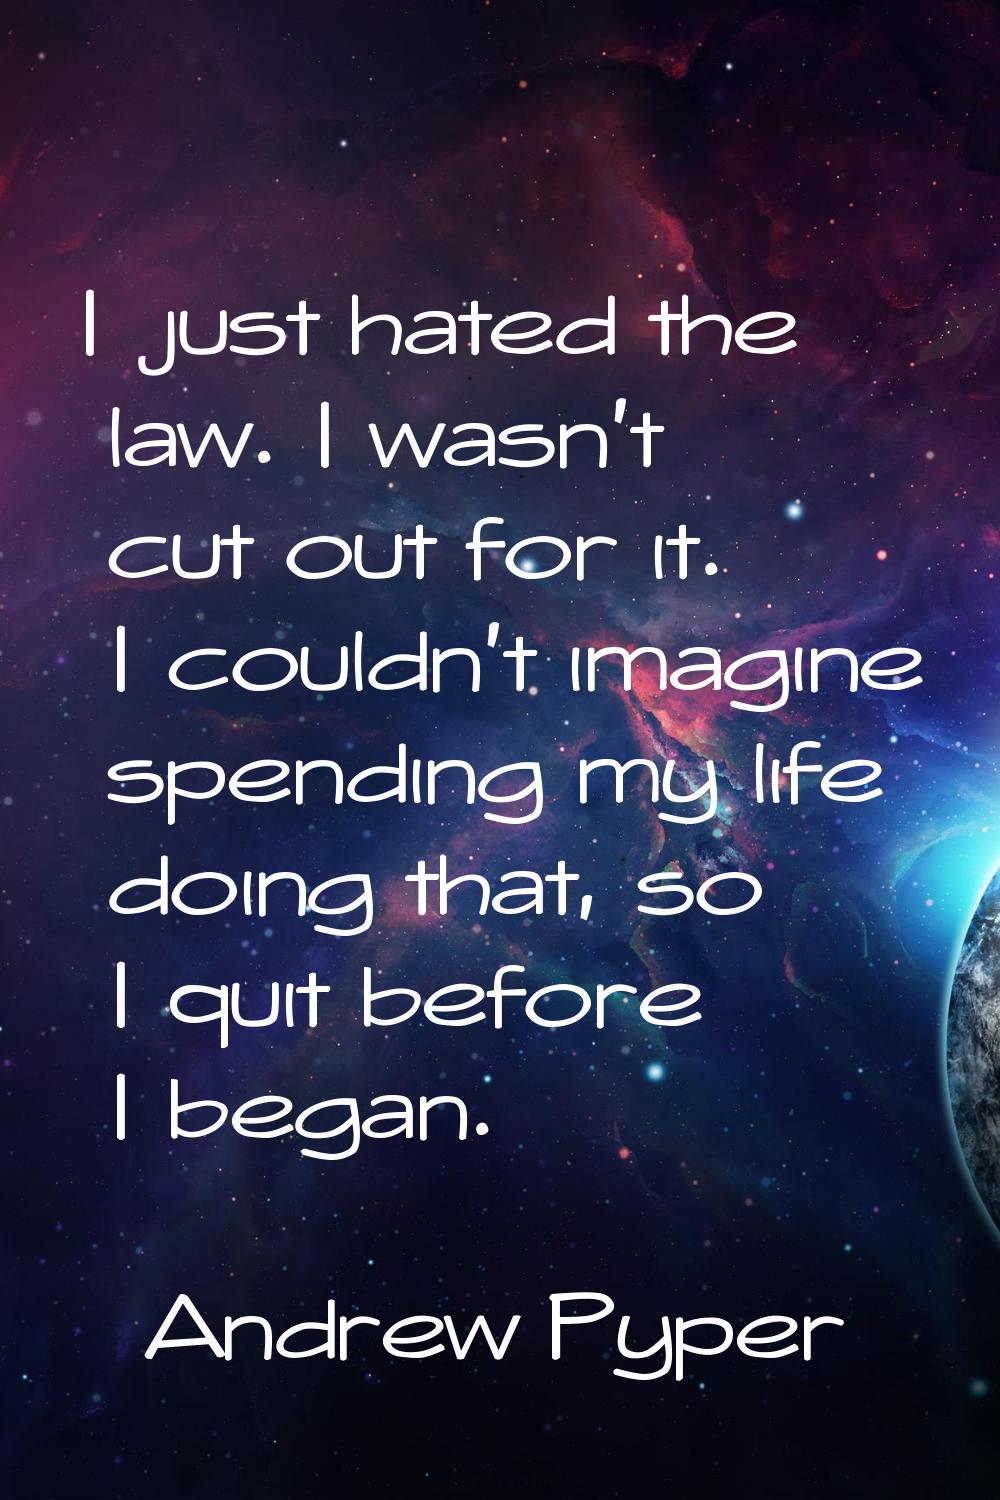 I just hated the law. I wasn't cut out for it. I couldn't imagine spending my life doing that, so I